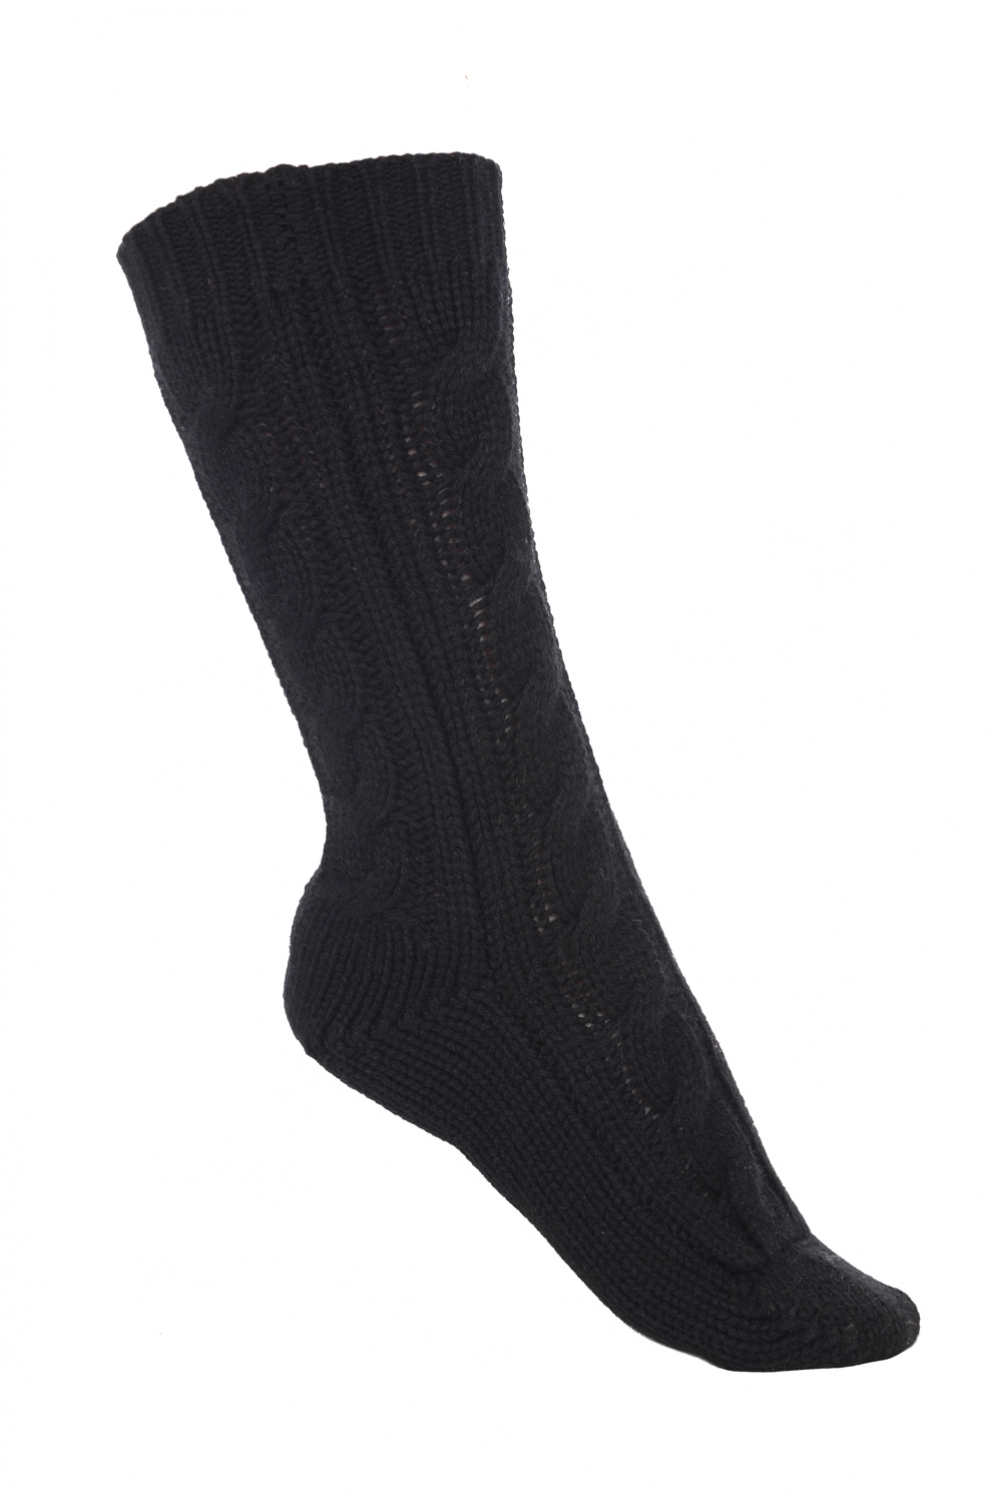 Cachemire accessoires chaussettes pedibus noir 37 41